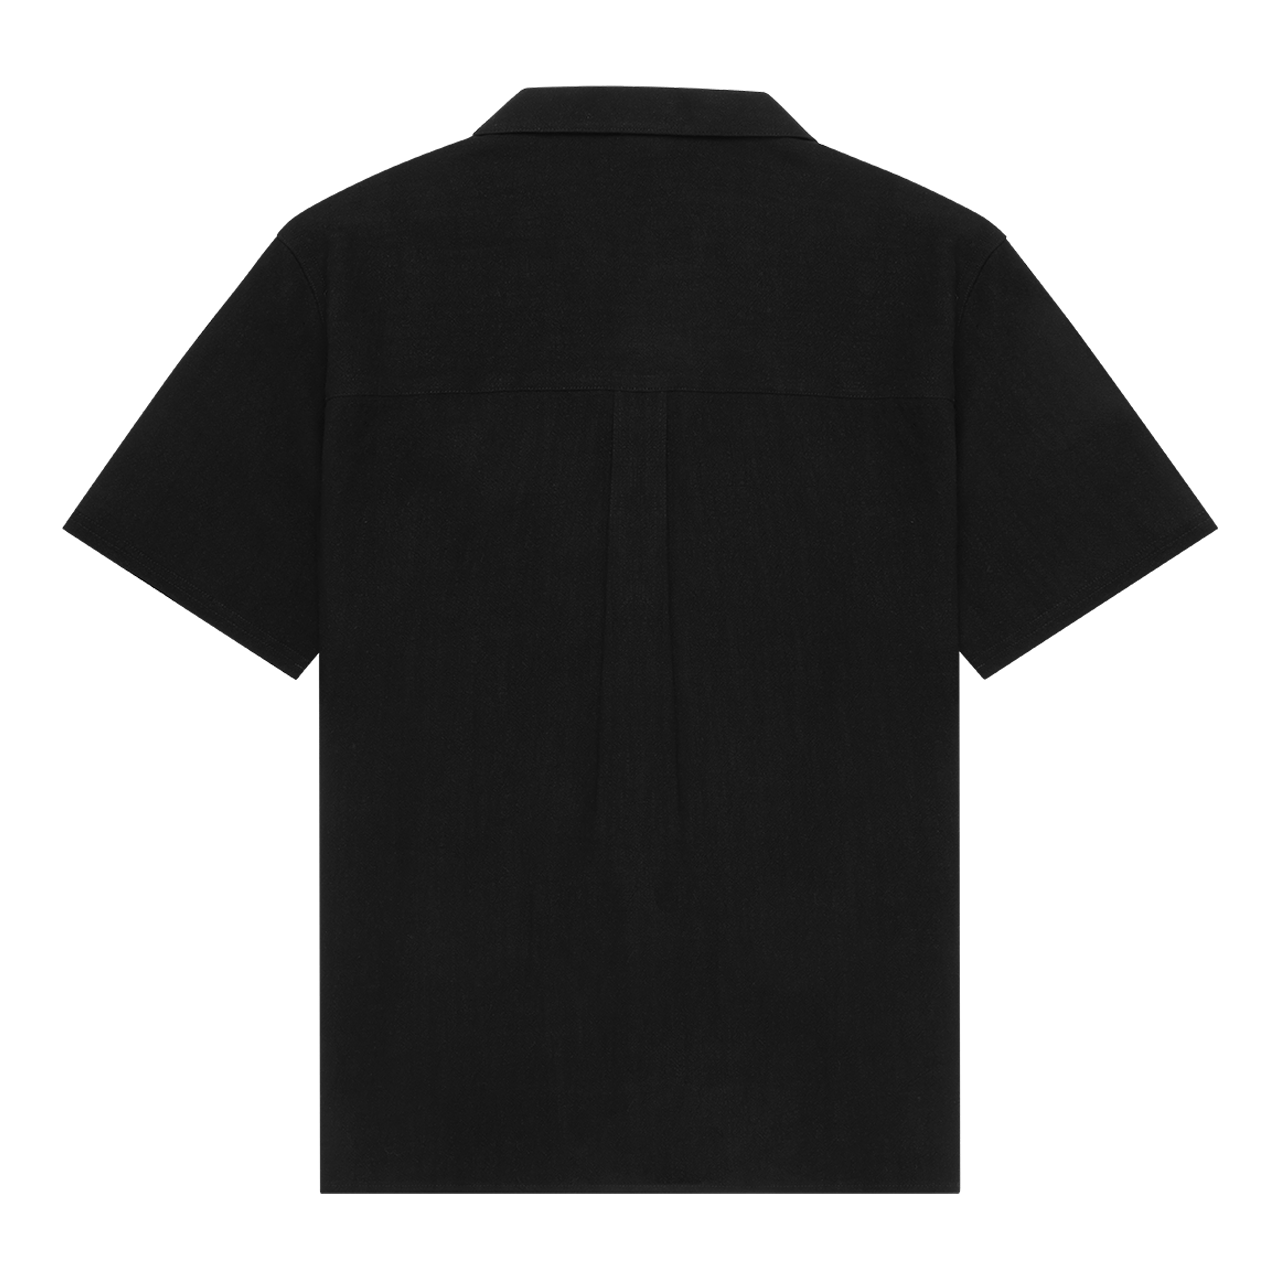 Stoked Cropped Resort Shirt Black